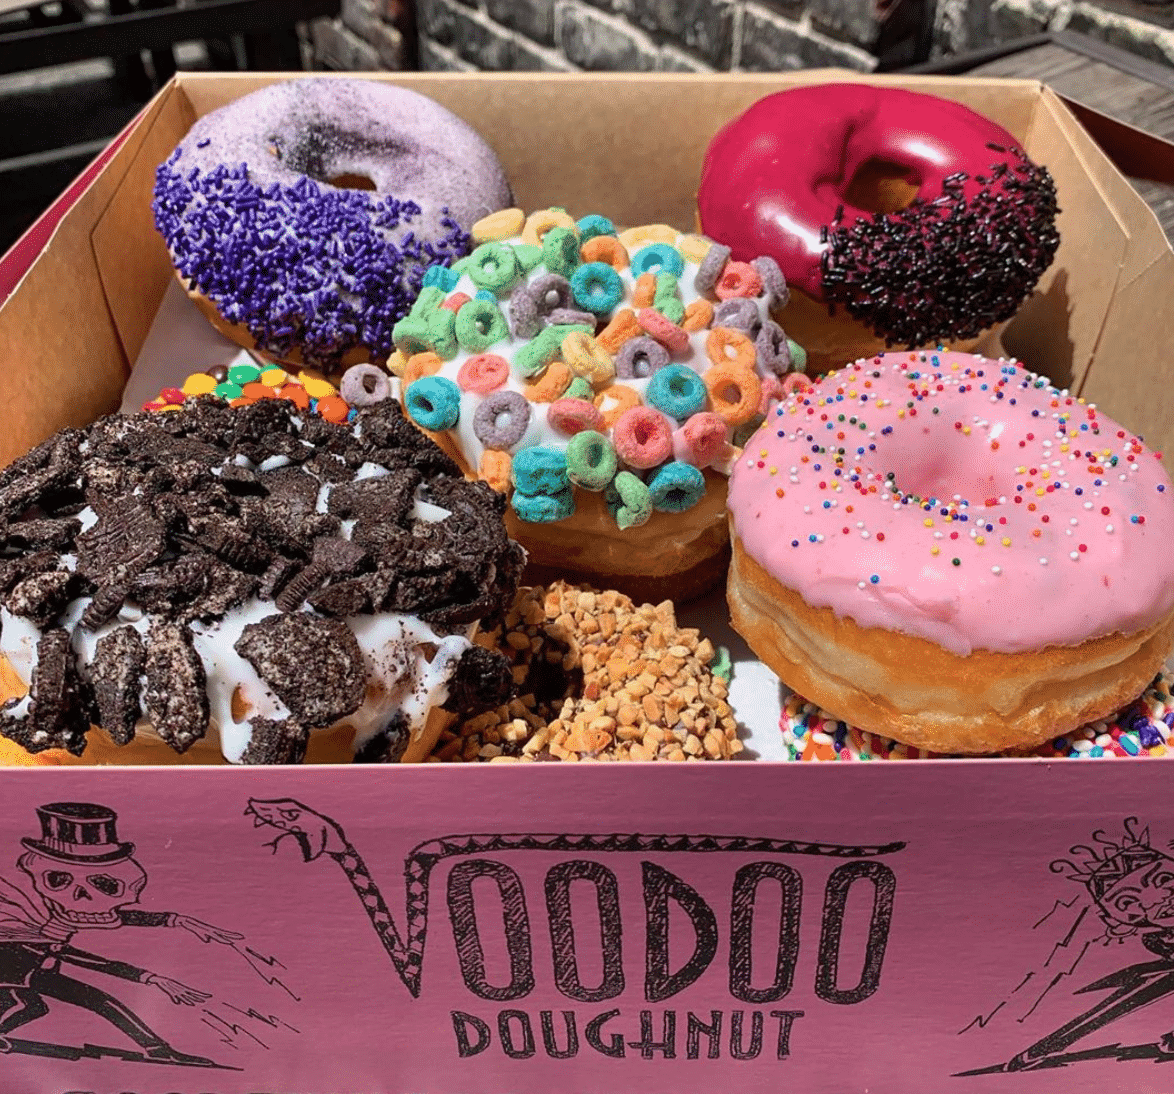 Voodoo Doughnut in Portland